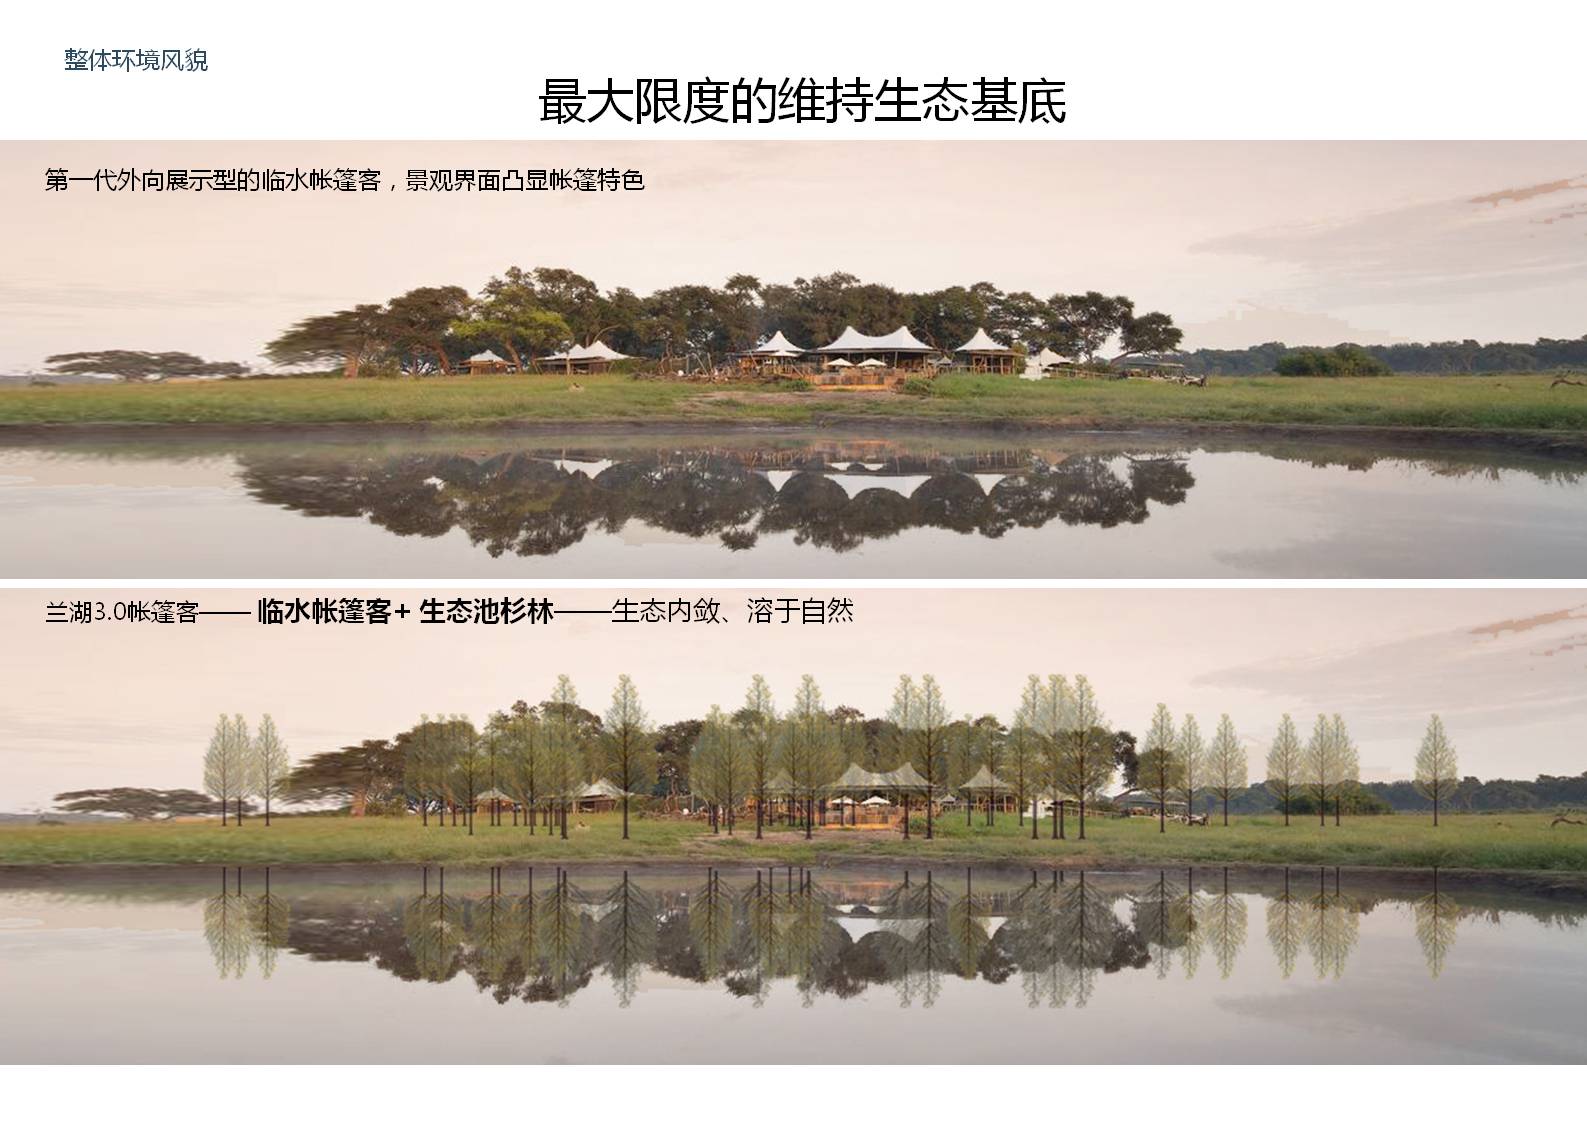 浙江兰湖帐篷客度假酒店项目旅游总体策划及概念性规划